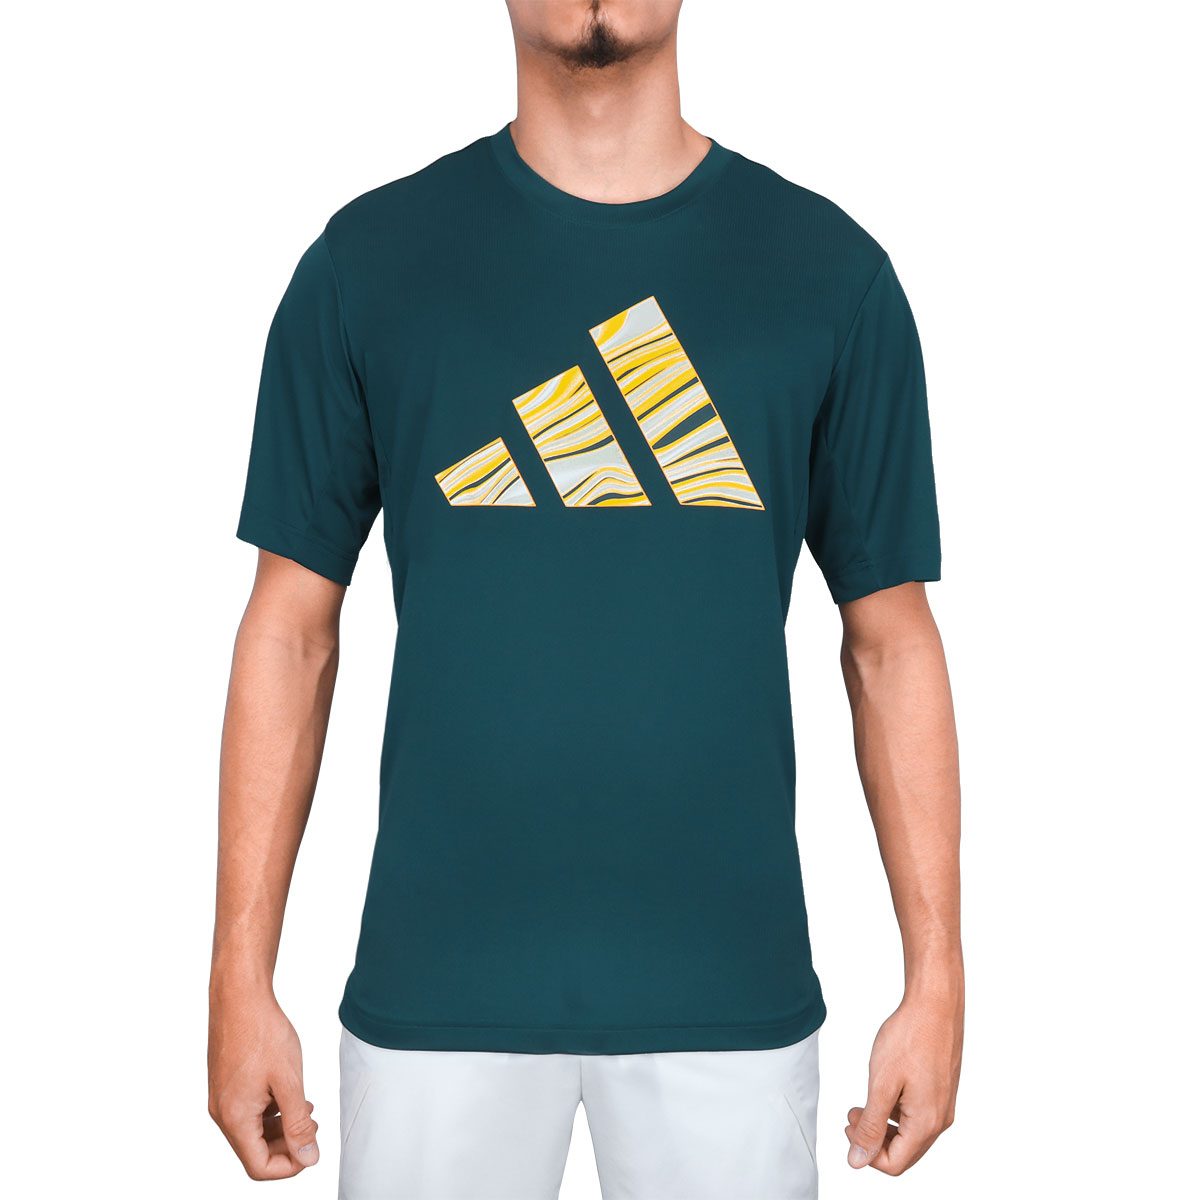 Camiseta Seleção Brasileira - Loja M&M Importados